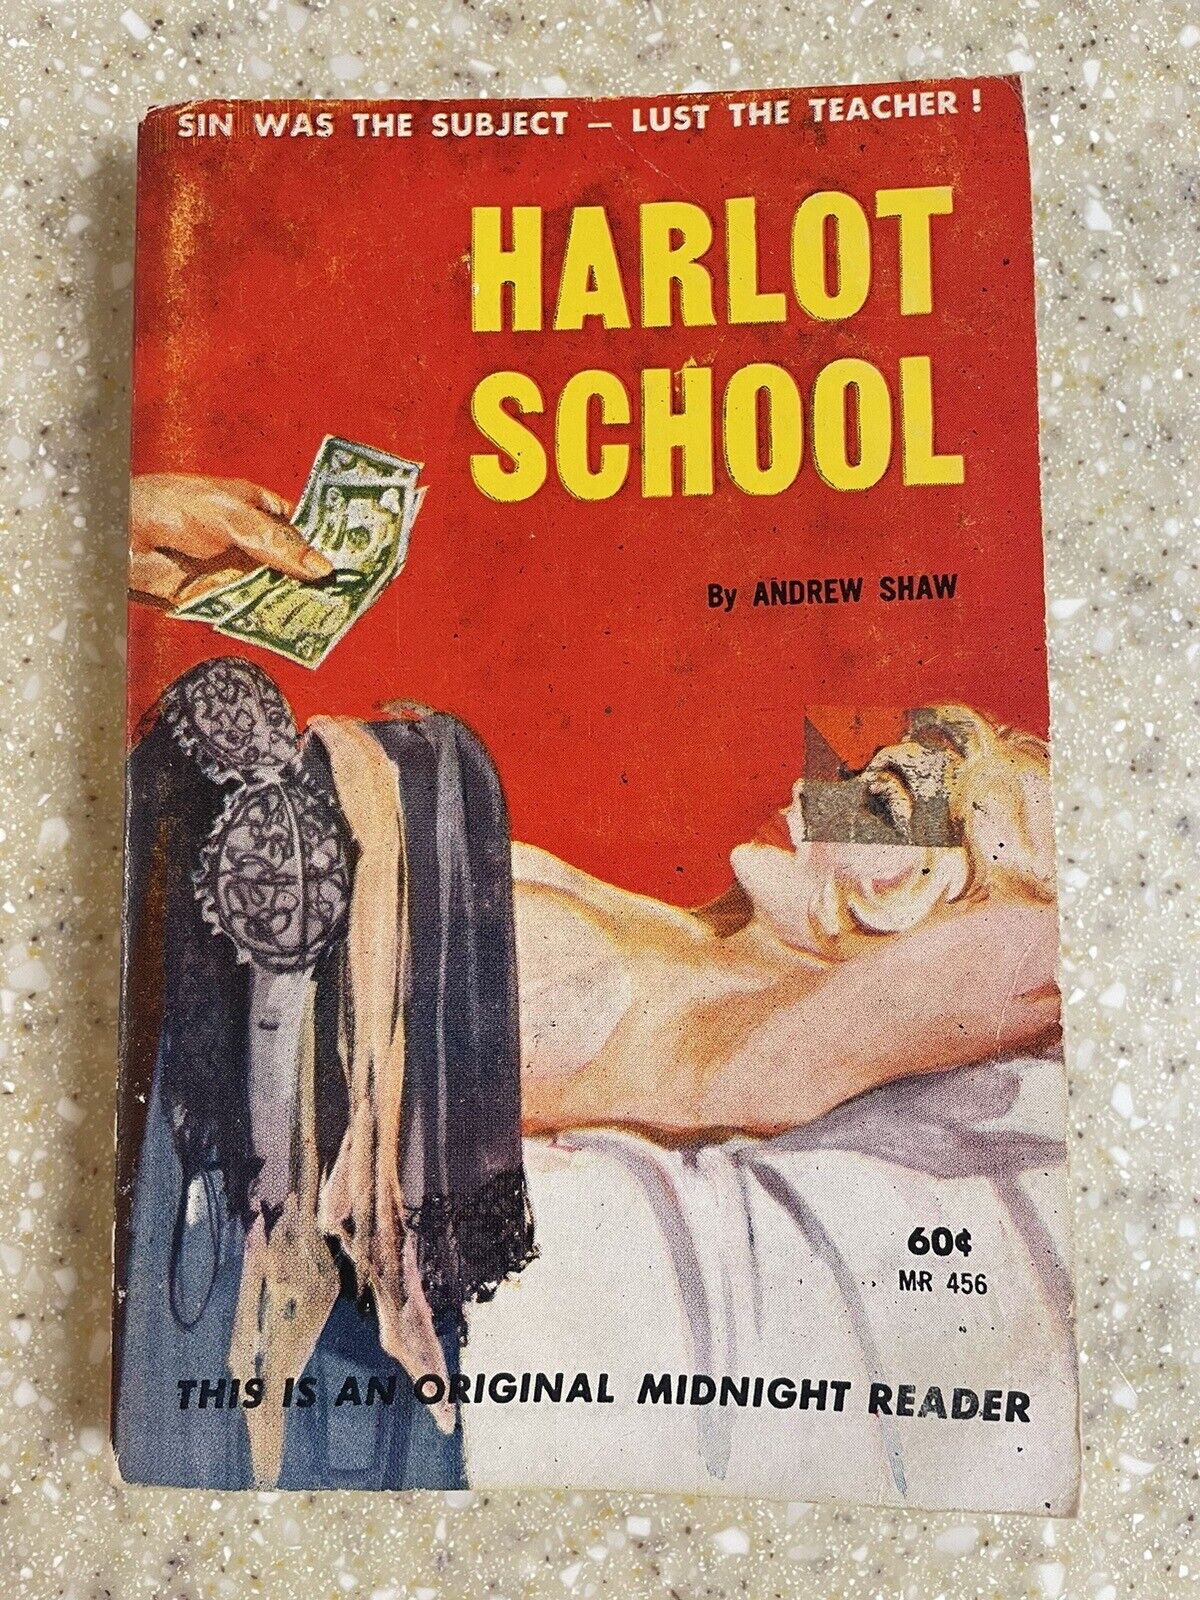 Harlot School -1962 Midnight Reader GGA vintage paperback pulp fiction Smut